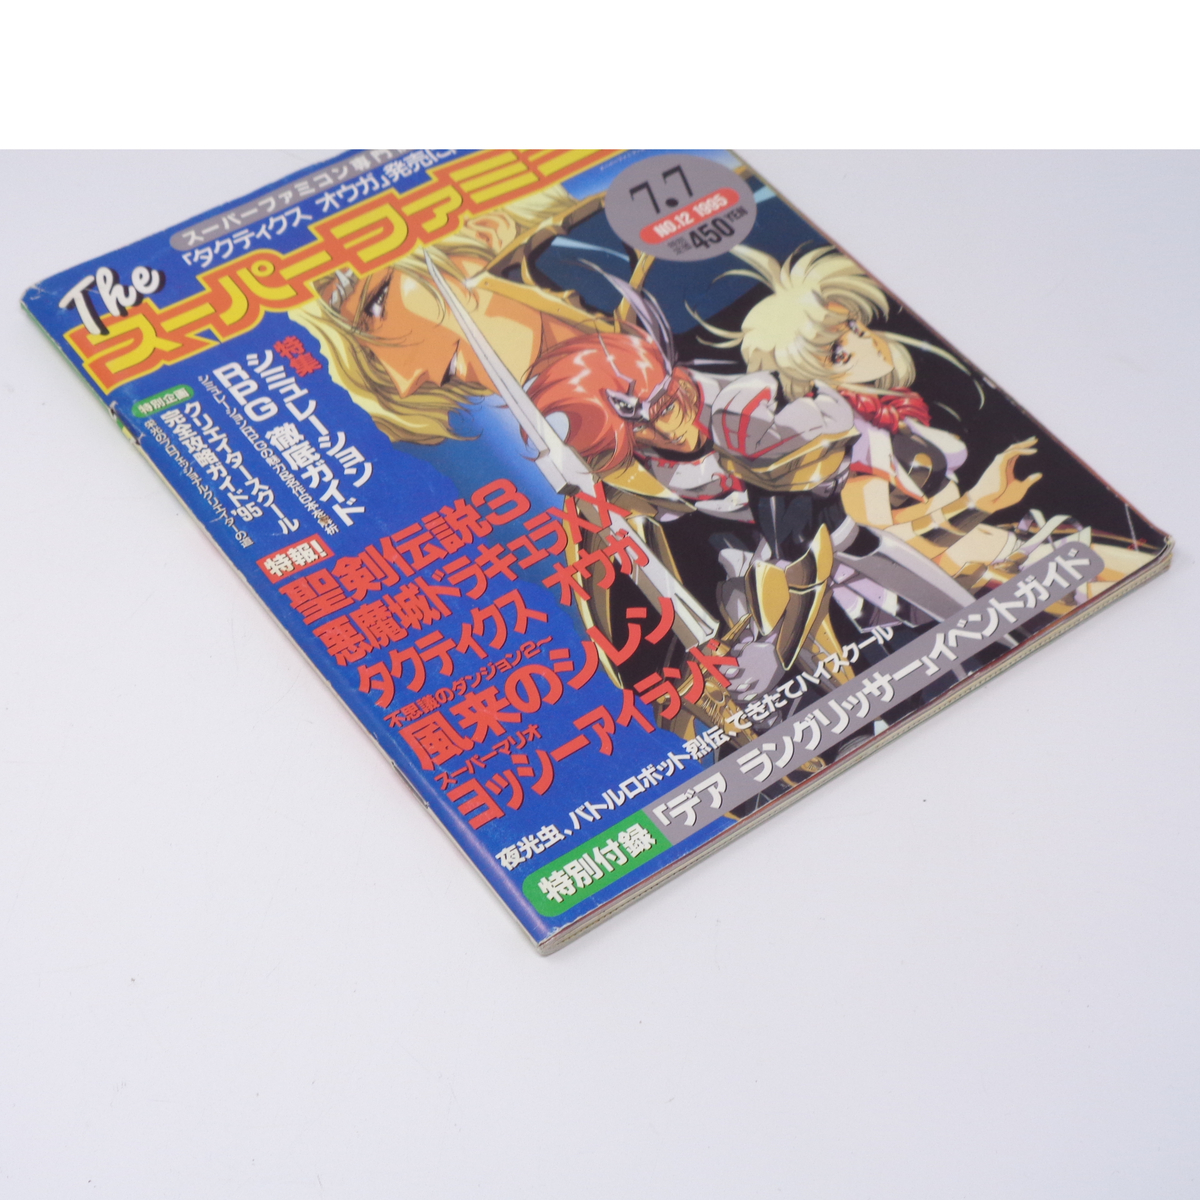 The SuperFamicom 1995年7月7日号 NO.12 別冊付録無し/風来のシレン/悪魔城ドラキュラXX/Theスーパーファミコン/ゲーム雑誌[Free Shipping]